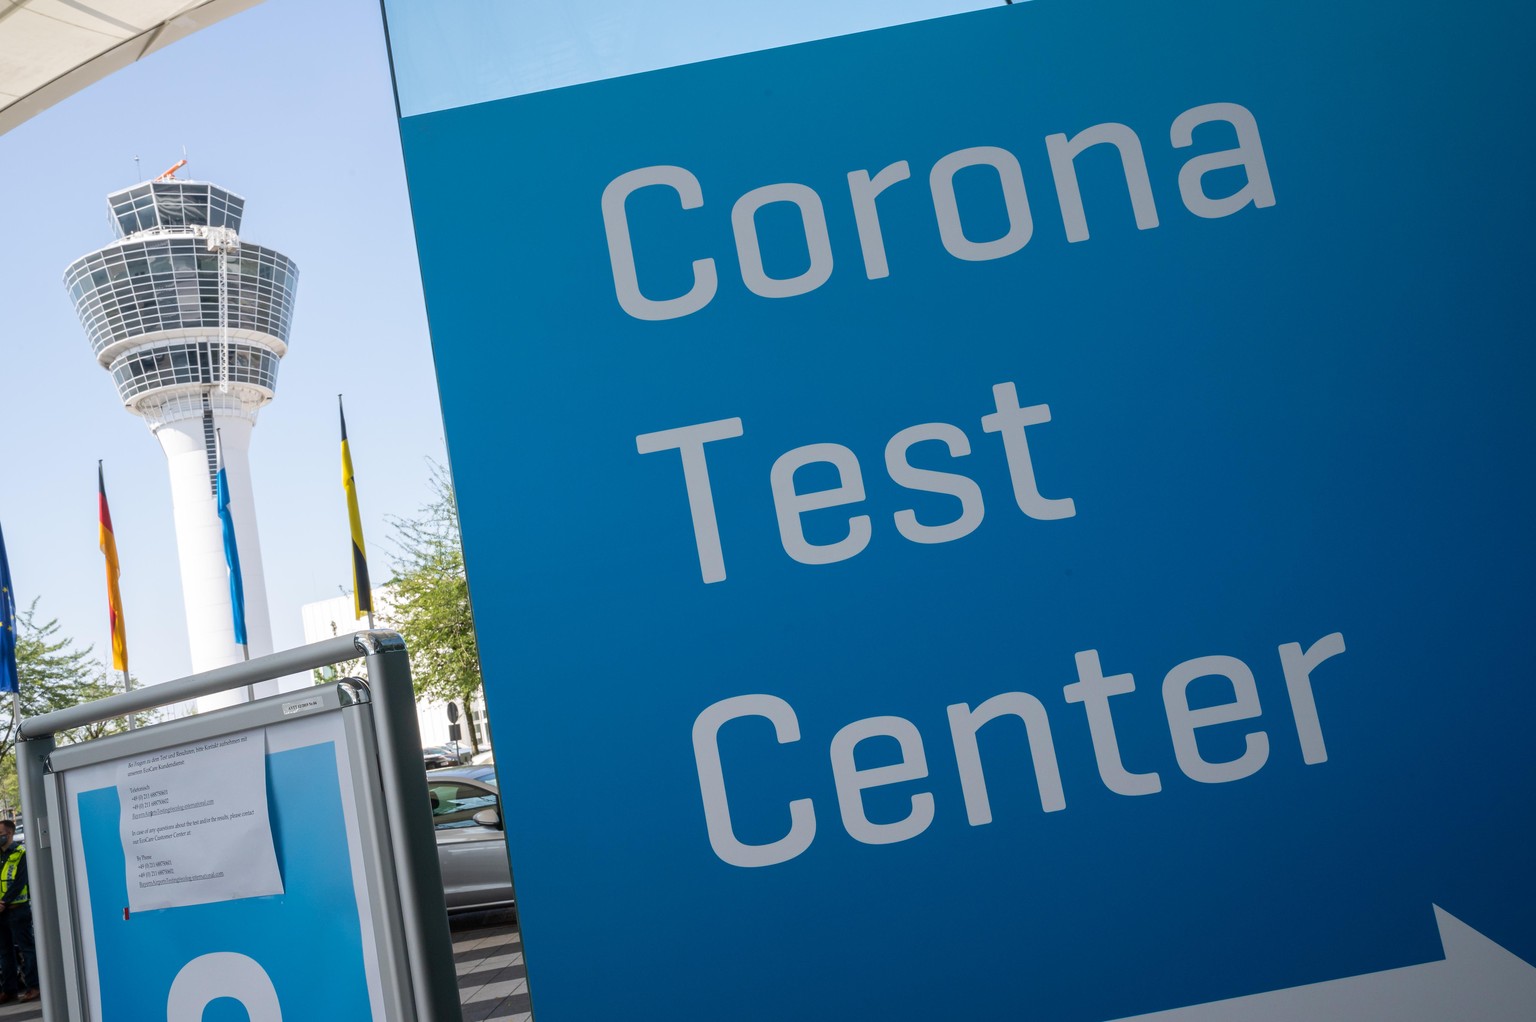 07.08.2020, Bayern, München: Ein Schild mit der Aufschrift «Corona Test Center» steht vor dem Corona-Testzentrum am Münchner Flughafen. Gesundheitsministerin Huml (CSU) besucht am Freitag das Corona-T ...